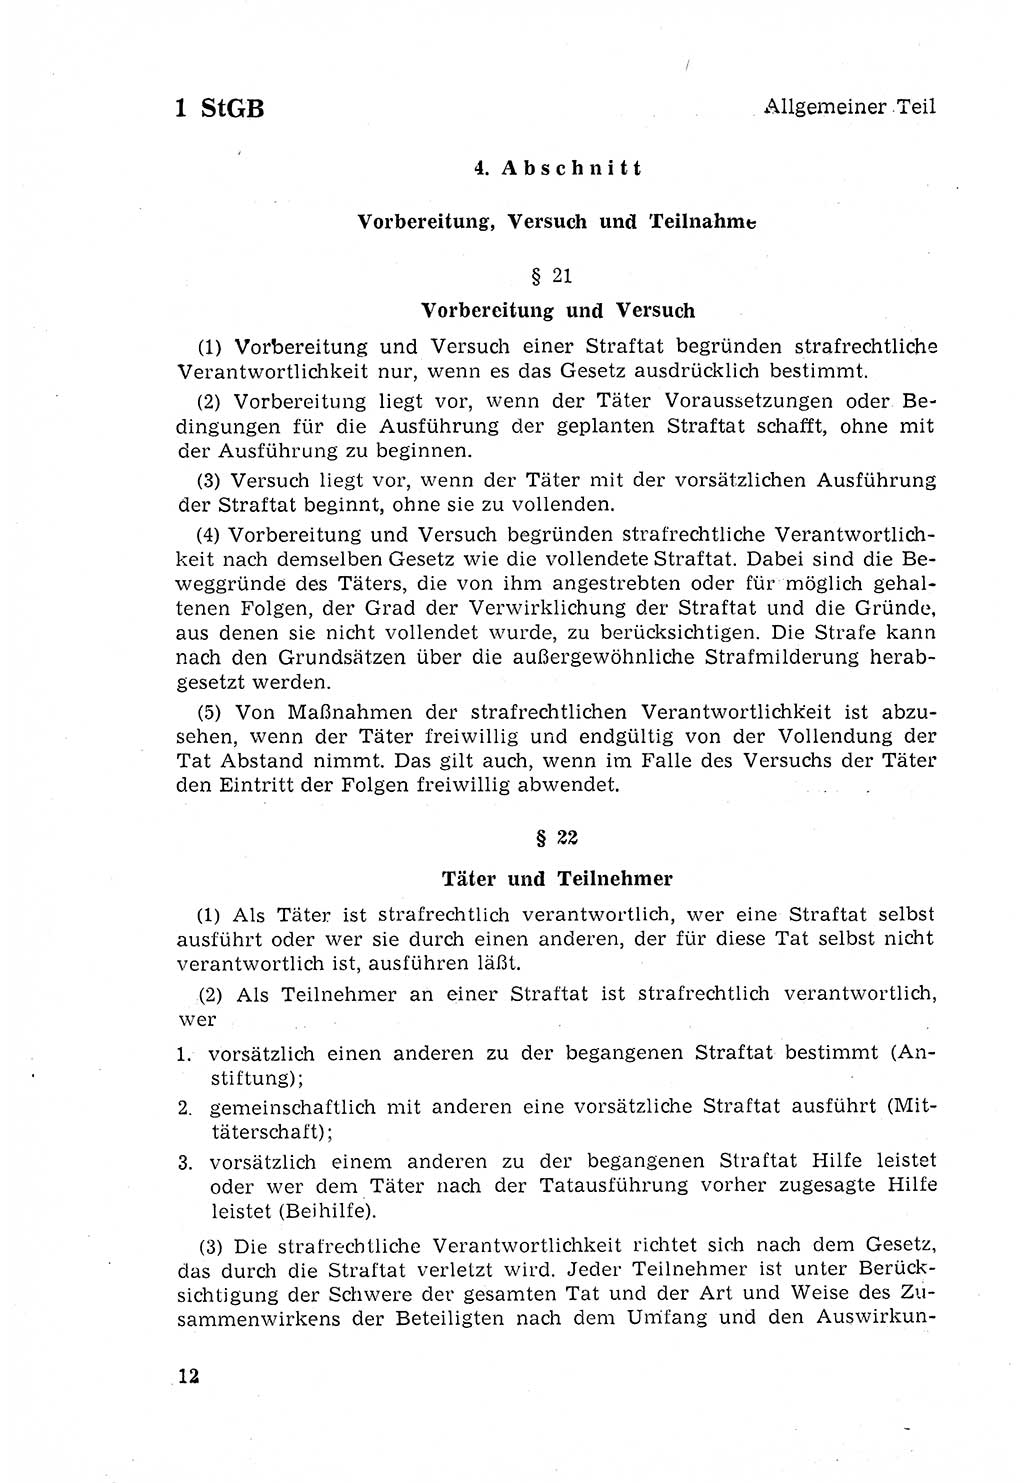 Strafgesetzbuch (StGB) der Deutschen Demokratischen Republik (DDR) 1968, Seite 12 (StGB DDR 1968, S. 12)